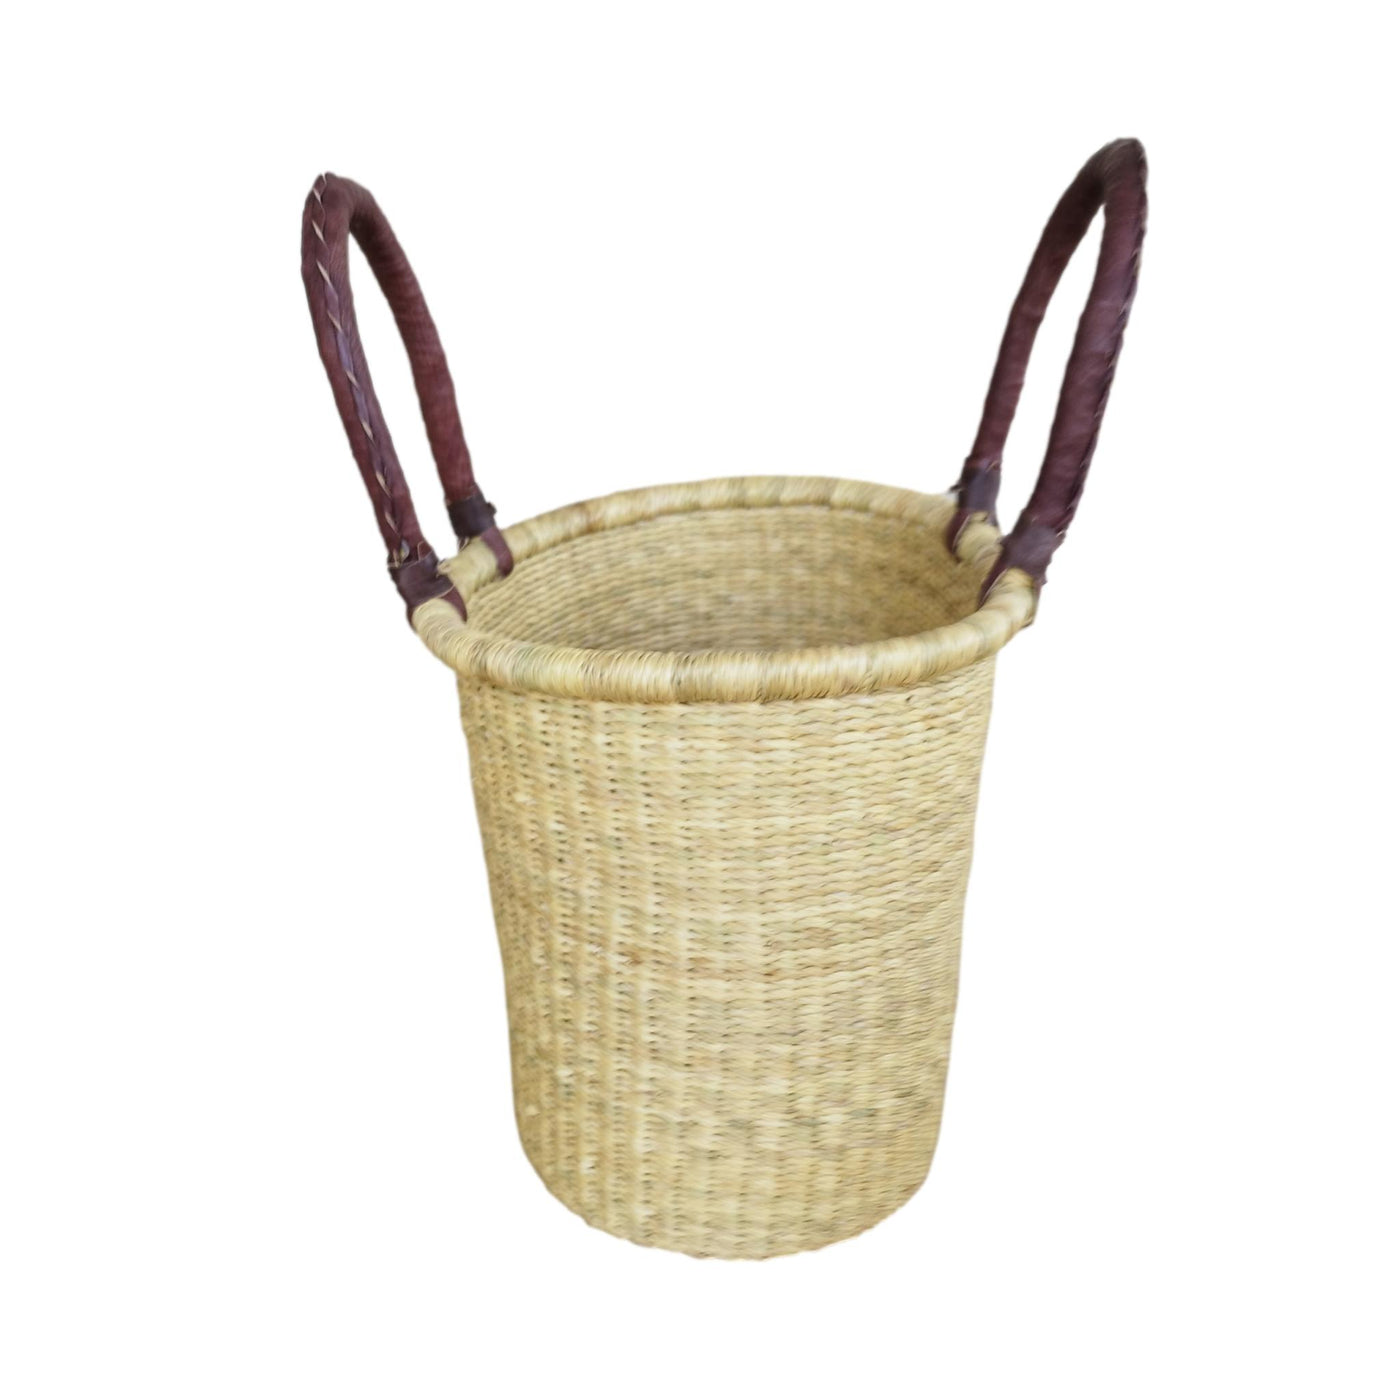 Woven basket | Wicker basket | Storage basket | Ester basket | Gift basket | Flower girl basket | African basket | Basket bag